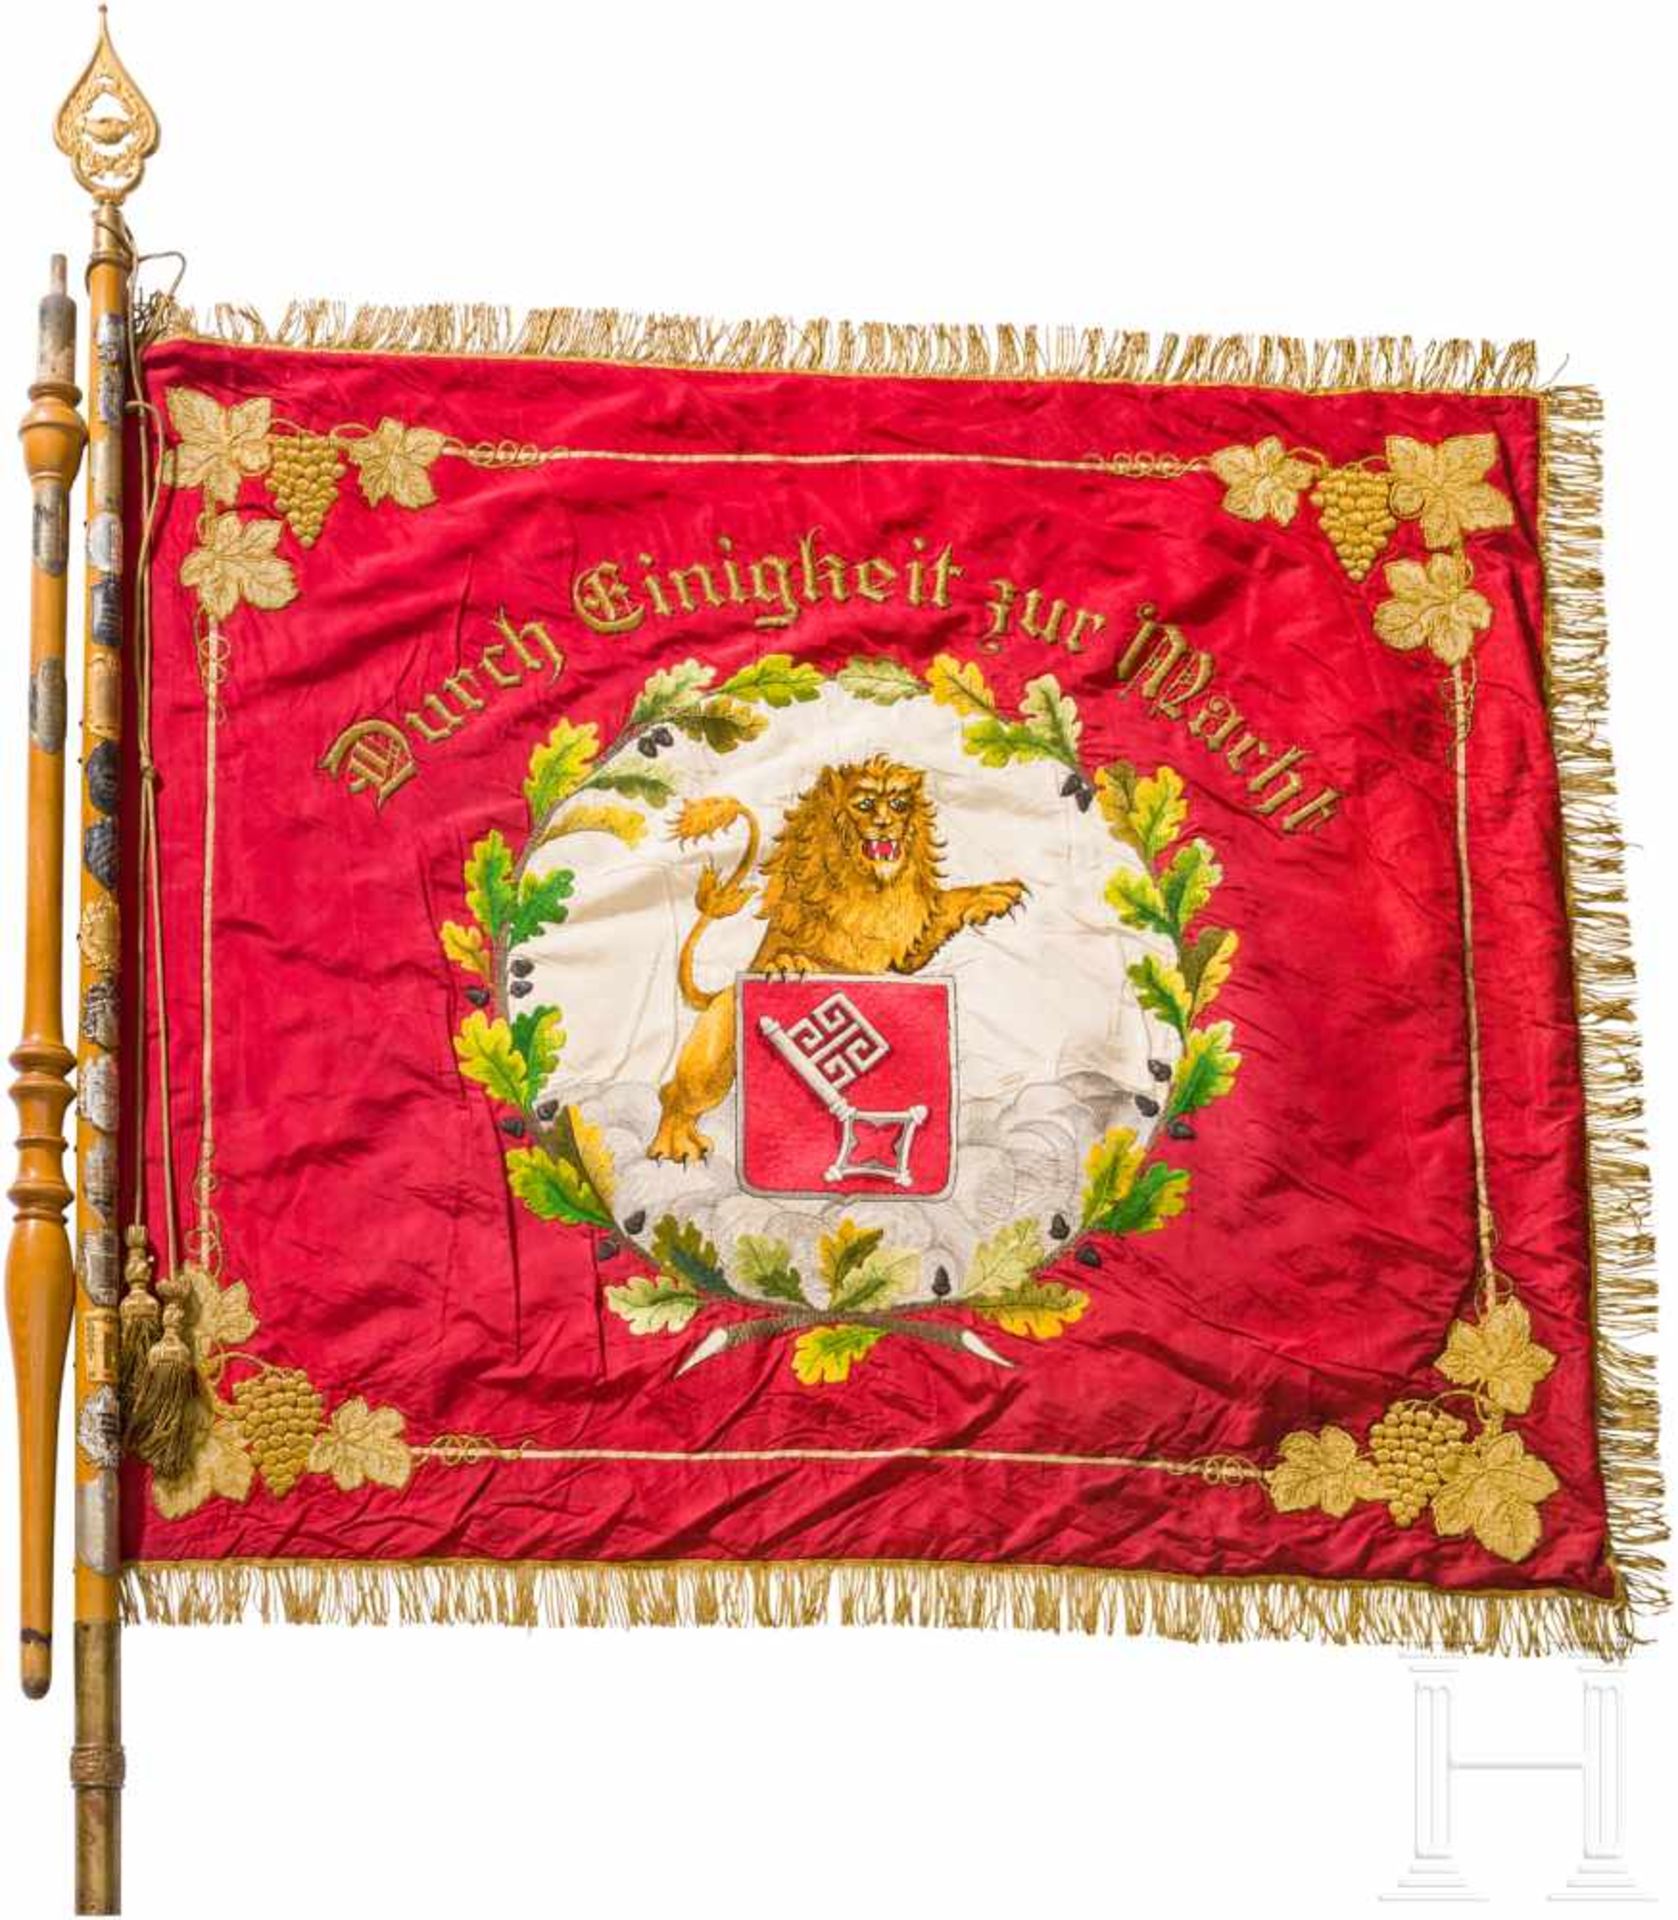 Fahne der Ortsgruppe Bremen des Reichsbundes Deutscher Obst- und Gemüsehändler von 1926Vs. aus roter